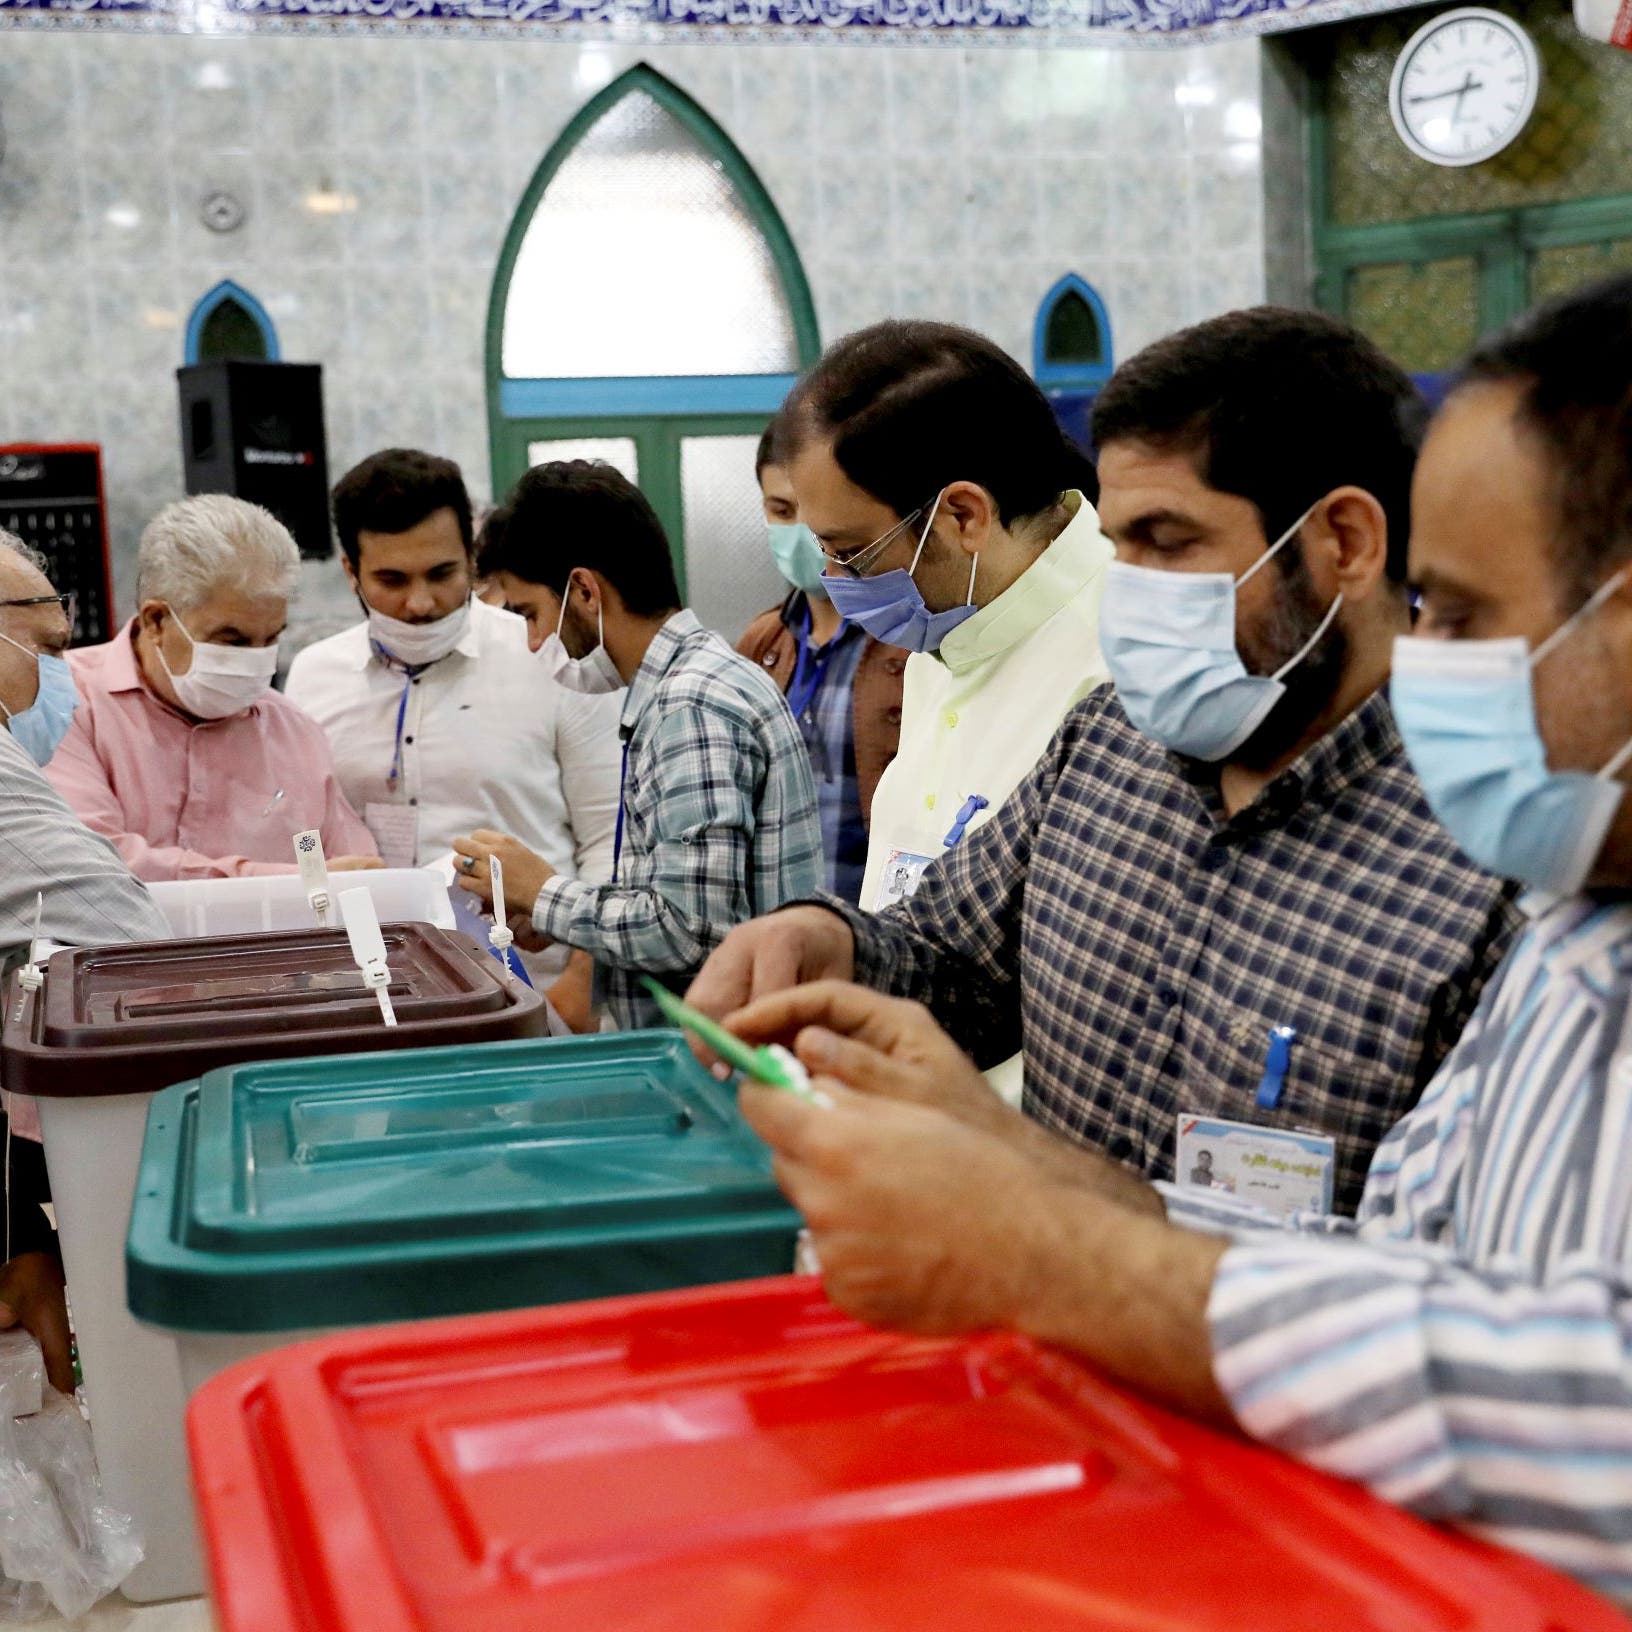 واشنطن: نأسف لحرمان الإيرانيين من عملية انتخابية حرة ونزيهة